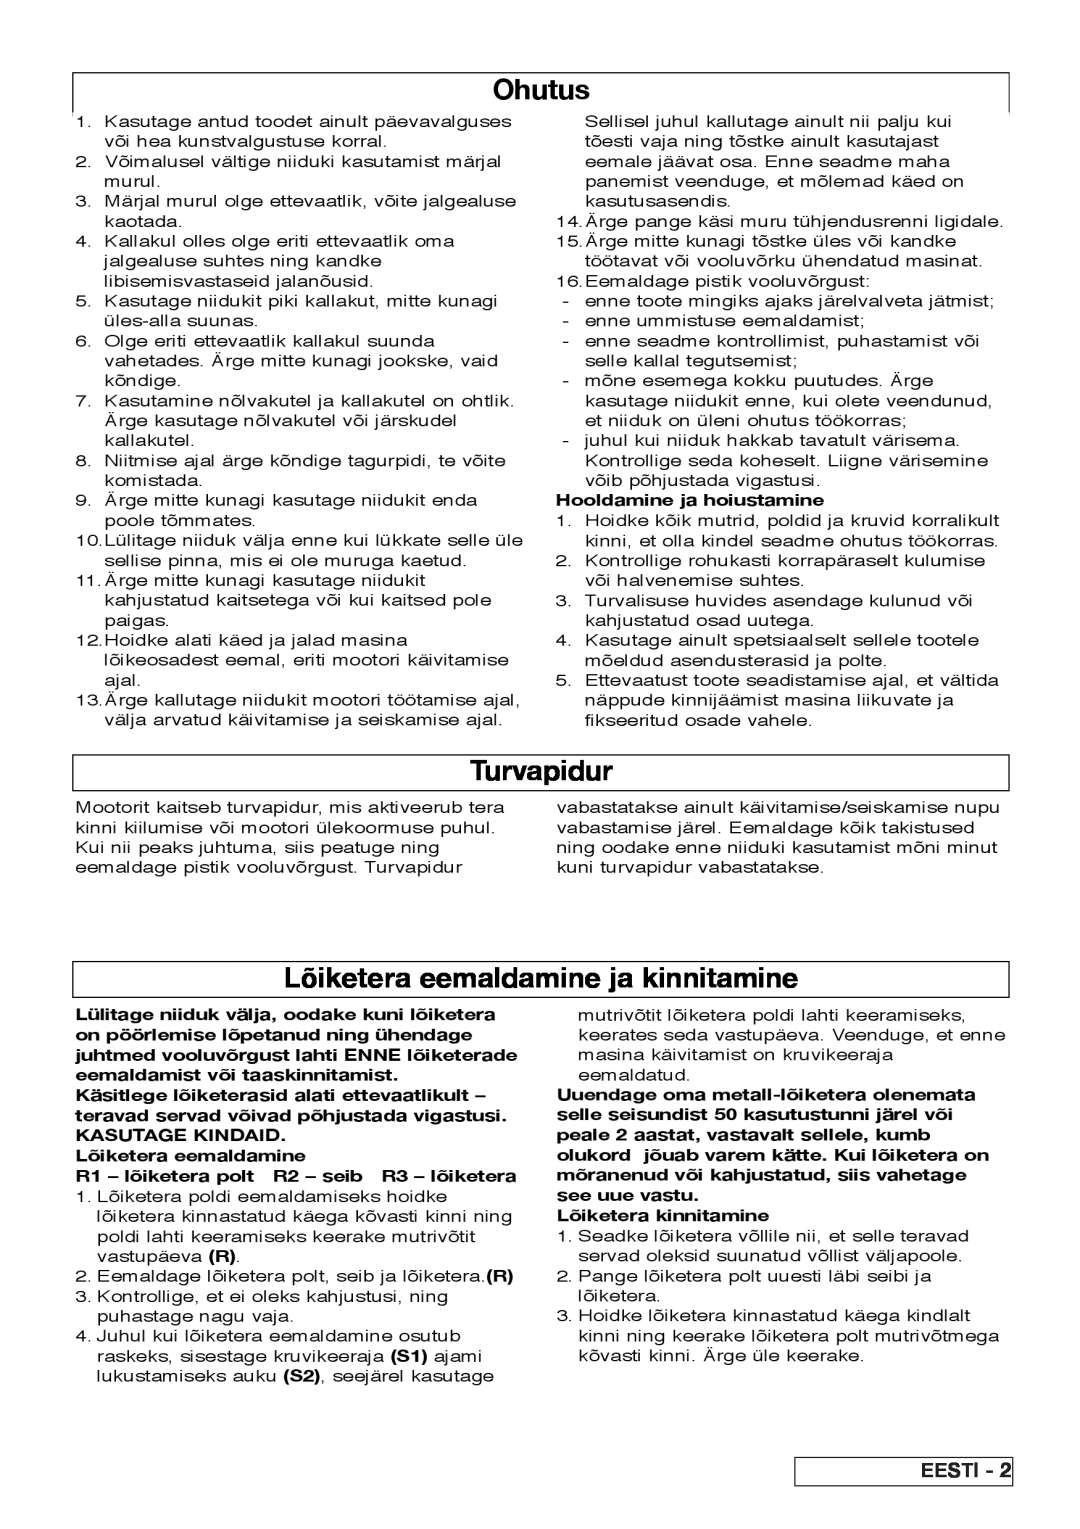 Flymo VM032 manual Turvapidur, Lõiketera eemaldamine ja kinnitamine, Eesti, Ohutus, Hooldamine ja hoiustamine 